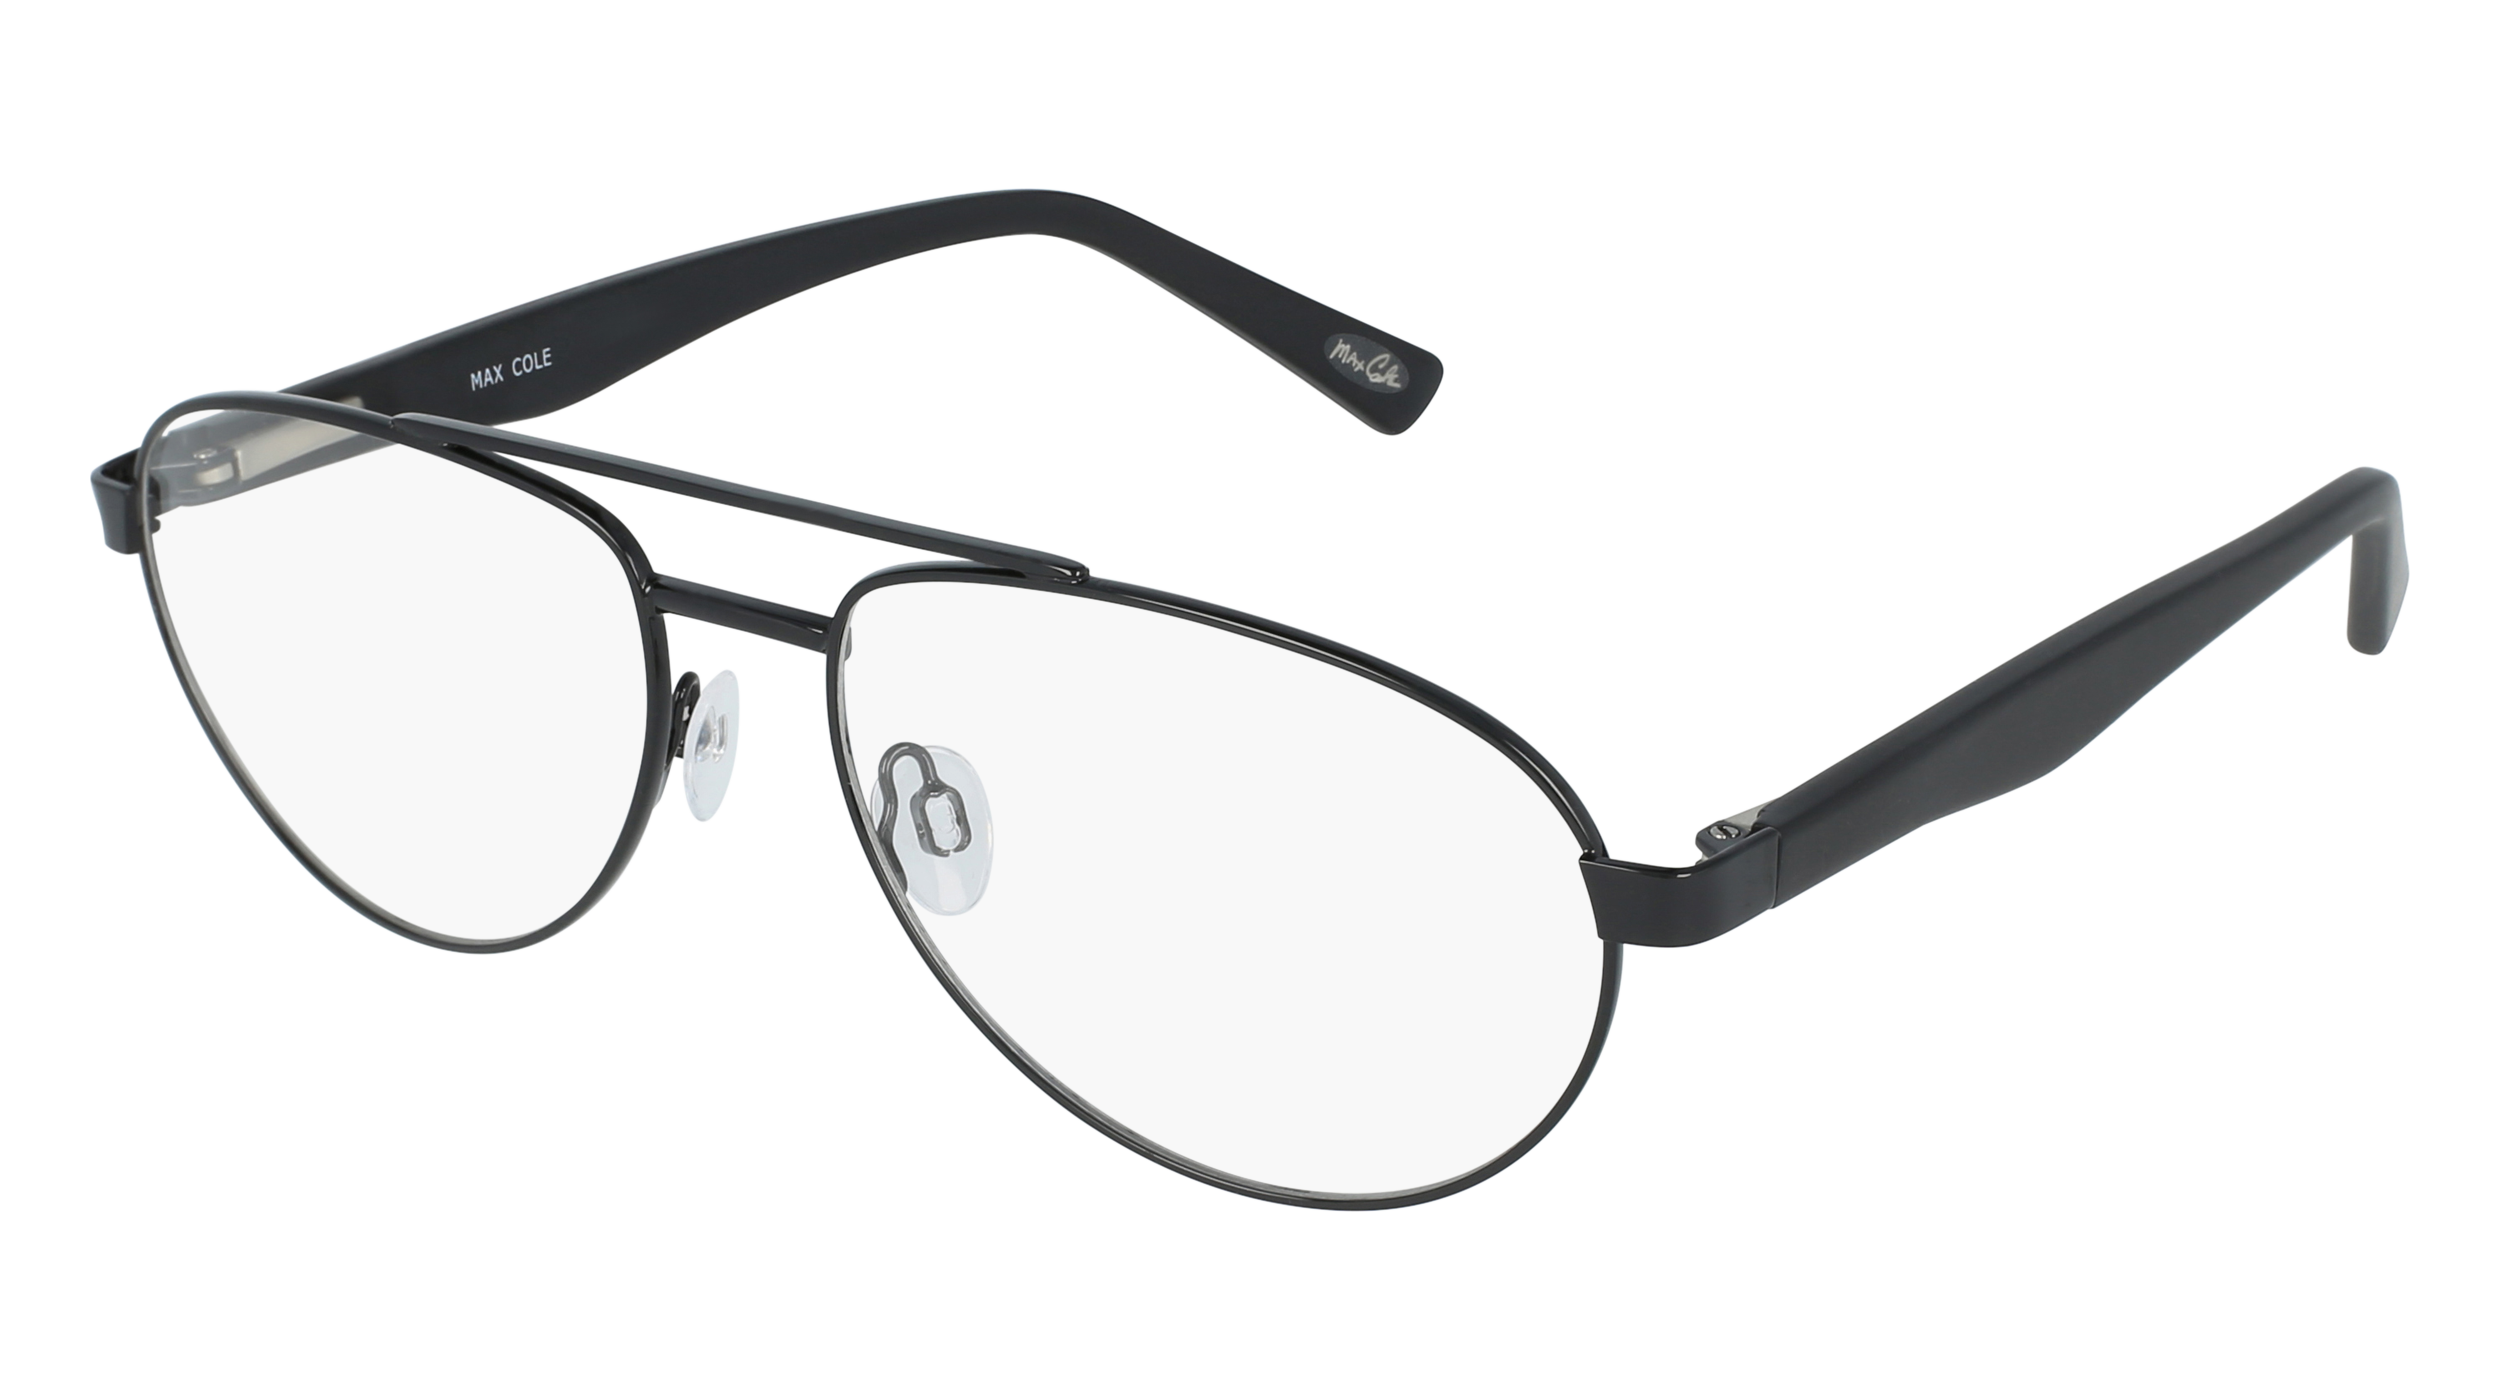 M MC 1502 men's eyeglasses (from the side)